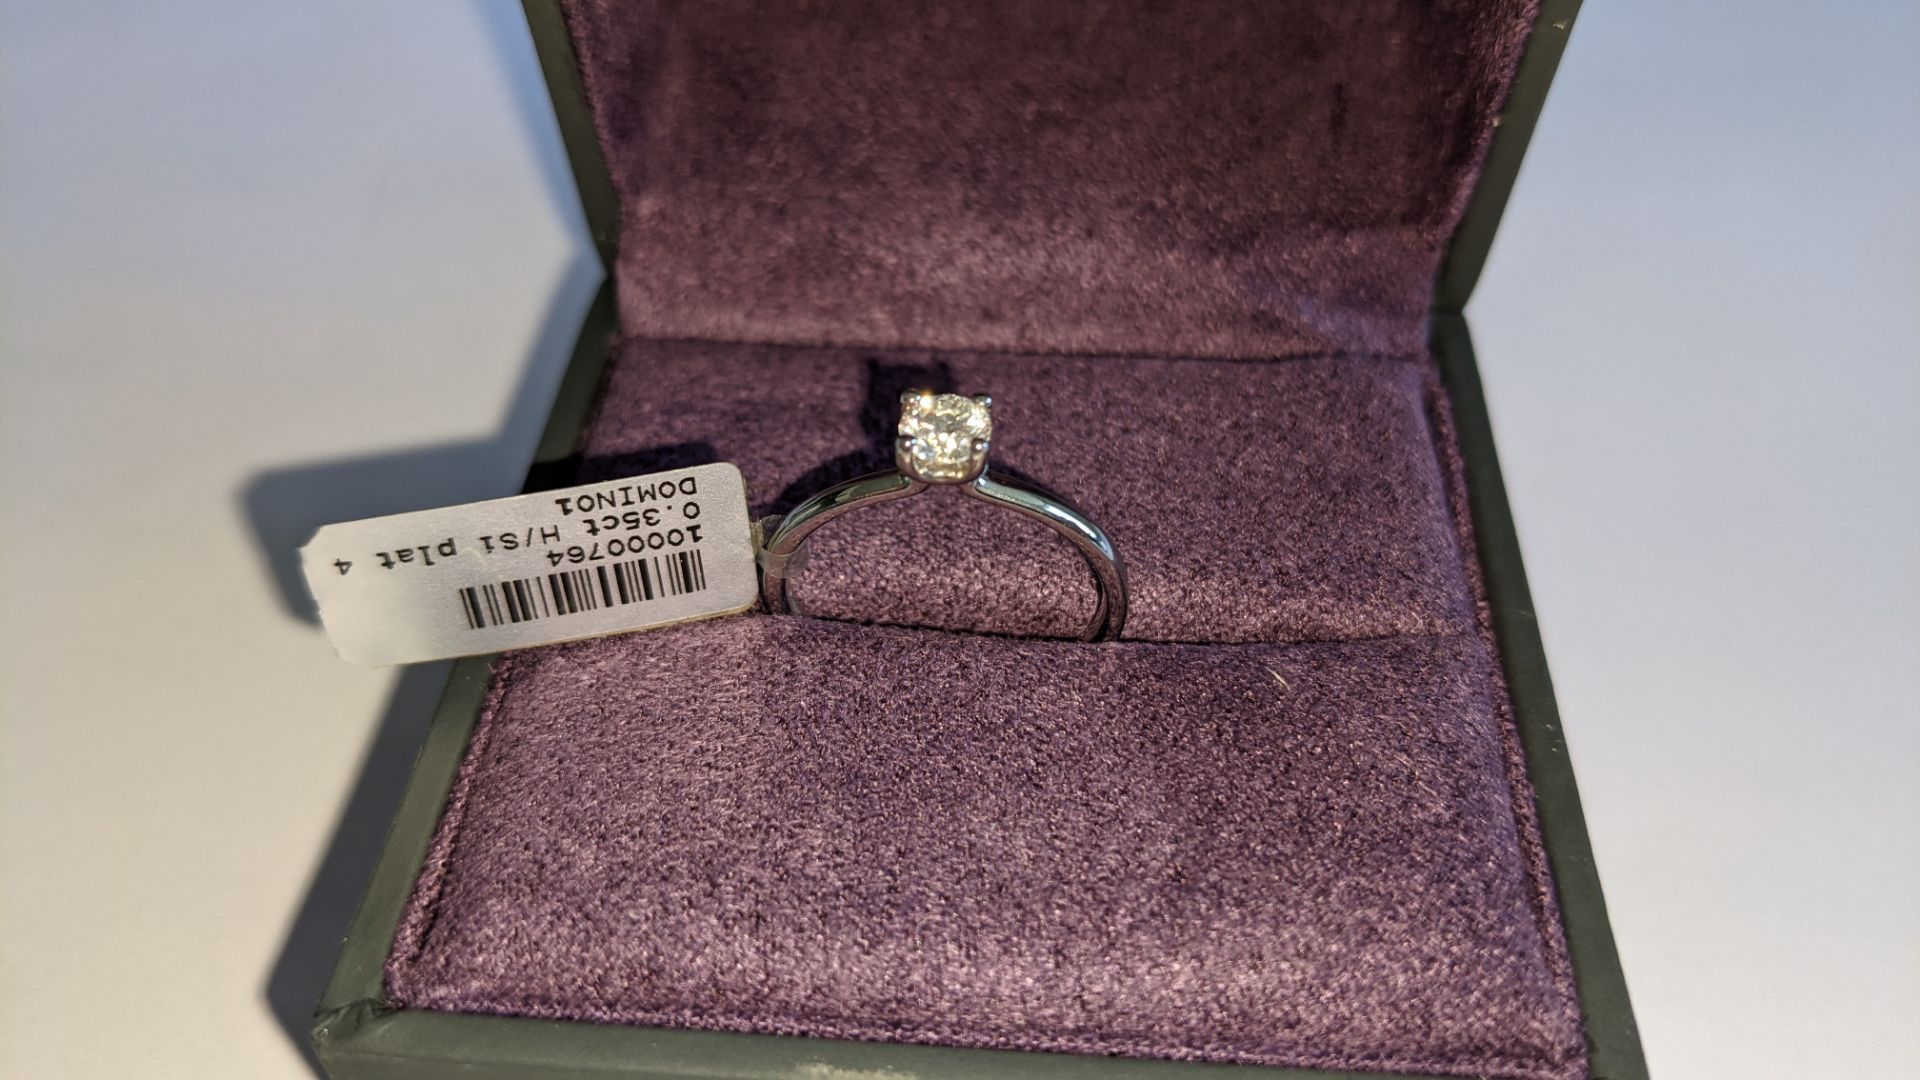 Single stone diamond & platinum 950 ring with 0.35ct H/Si diamond, RRP £1,507 - Image 2 of 29